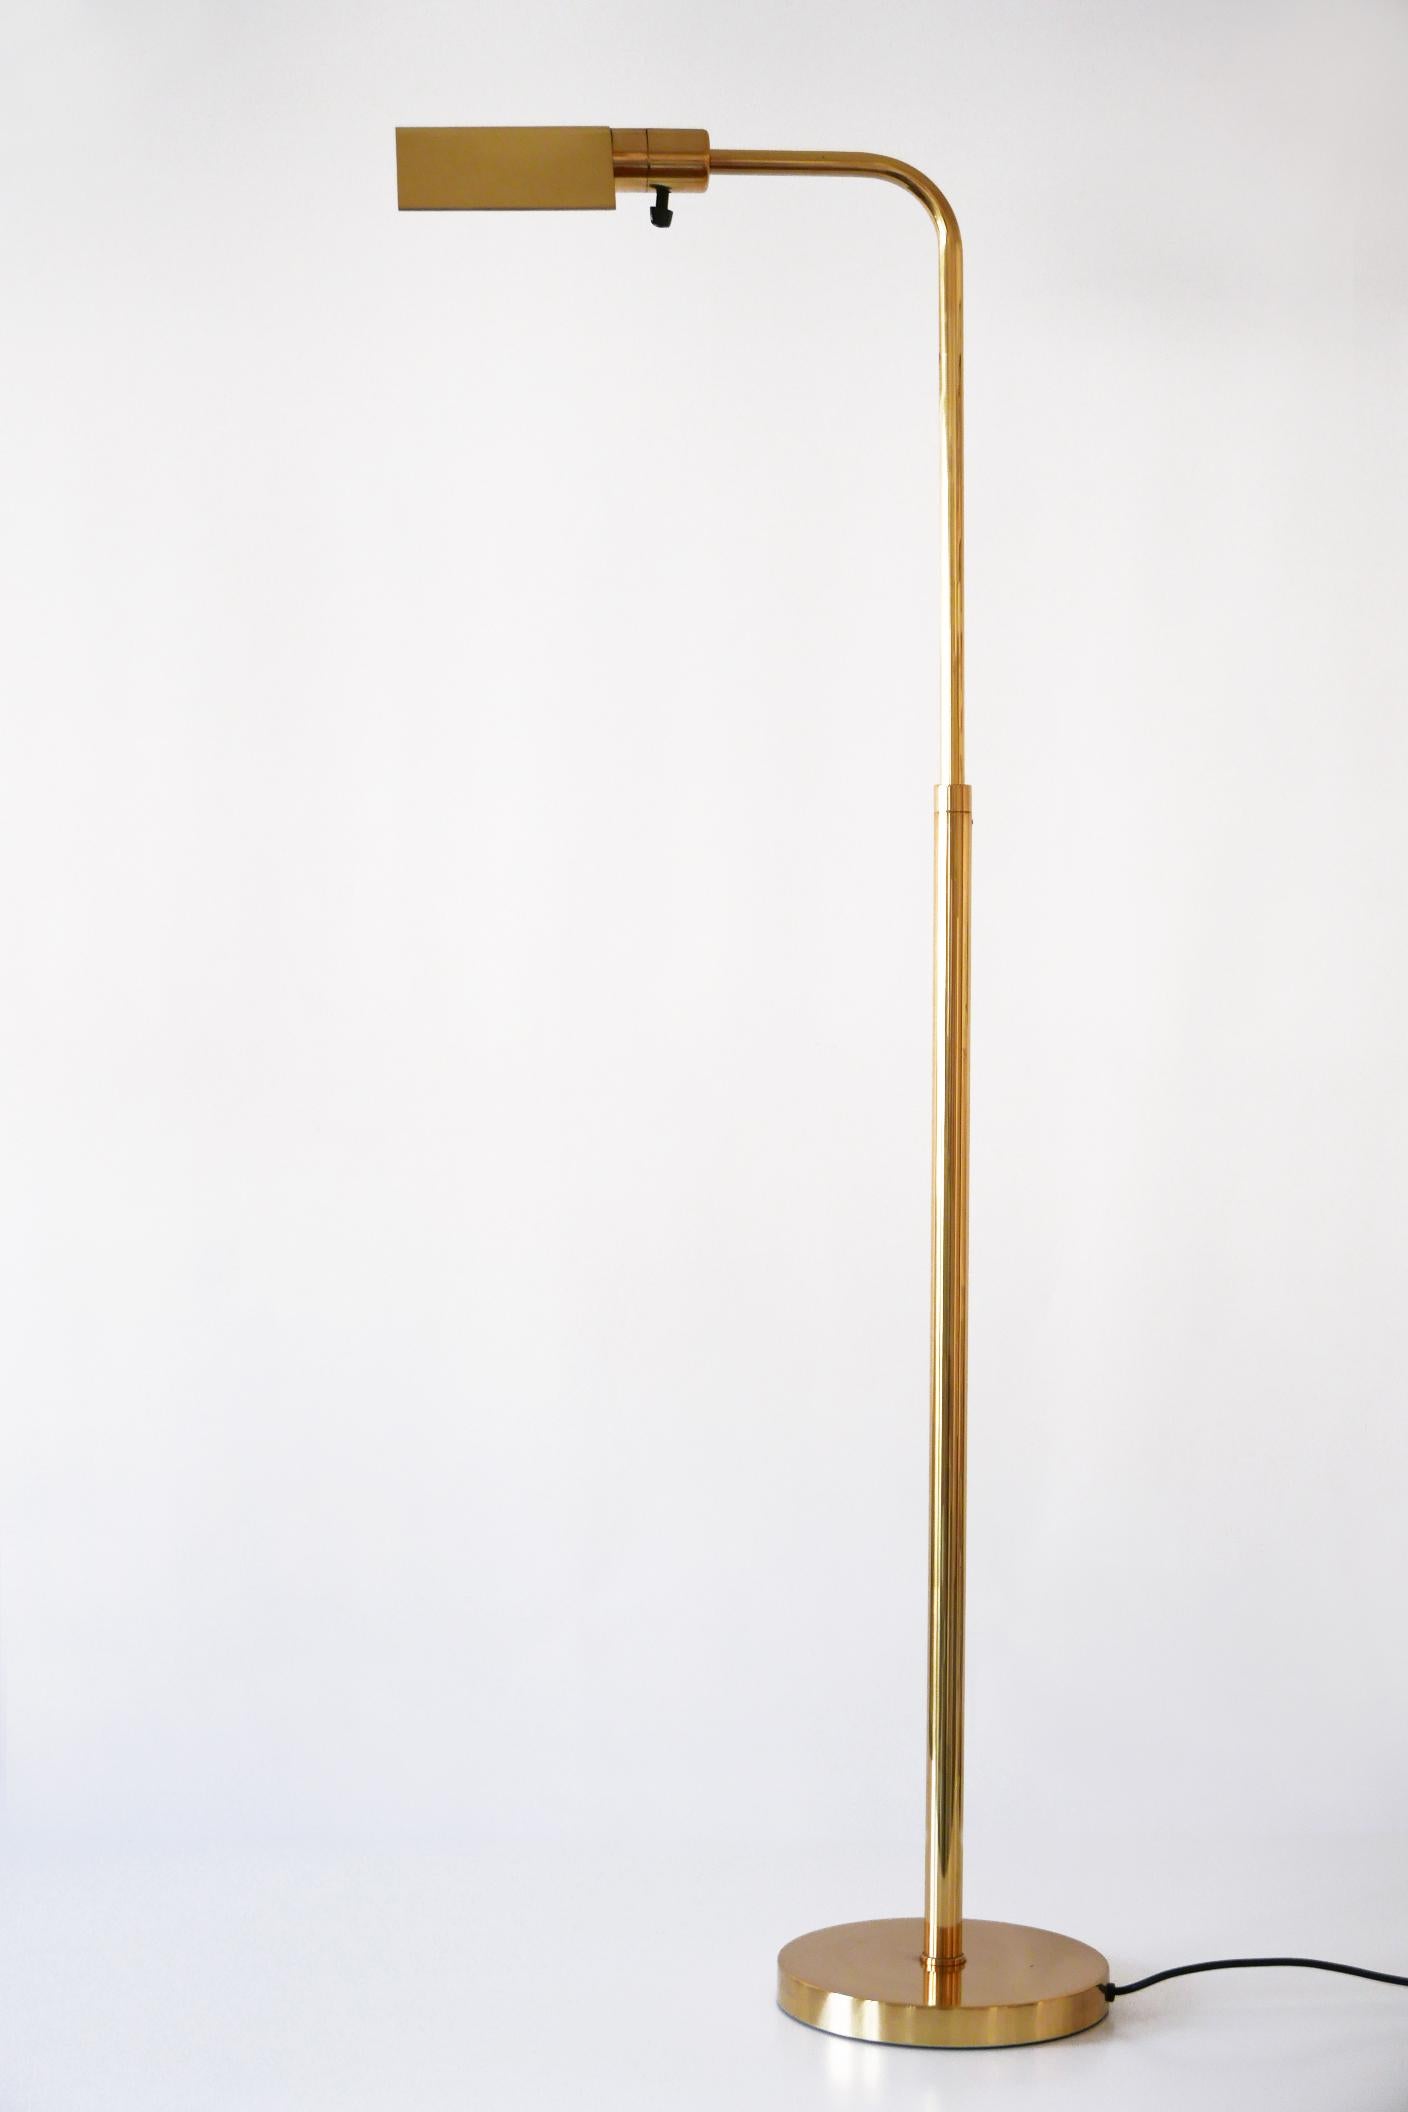 Mid-Century Modern Brass Floor Lamp or Reading Light by Metalarte for Hansen 1